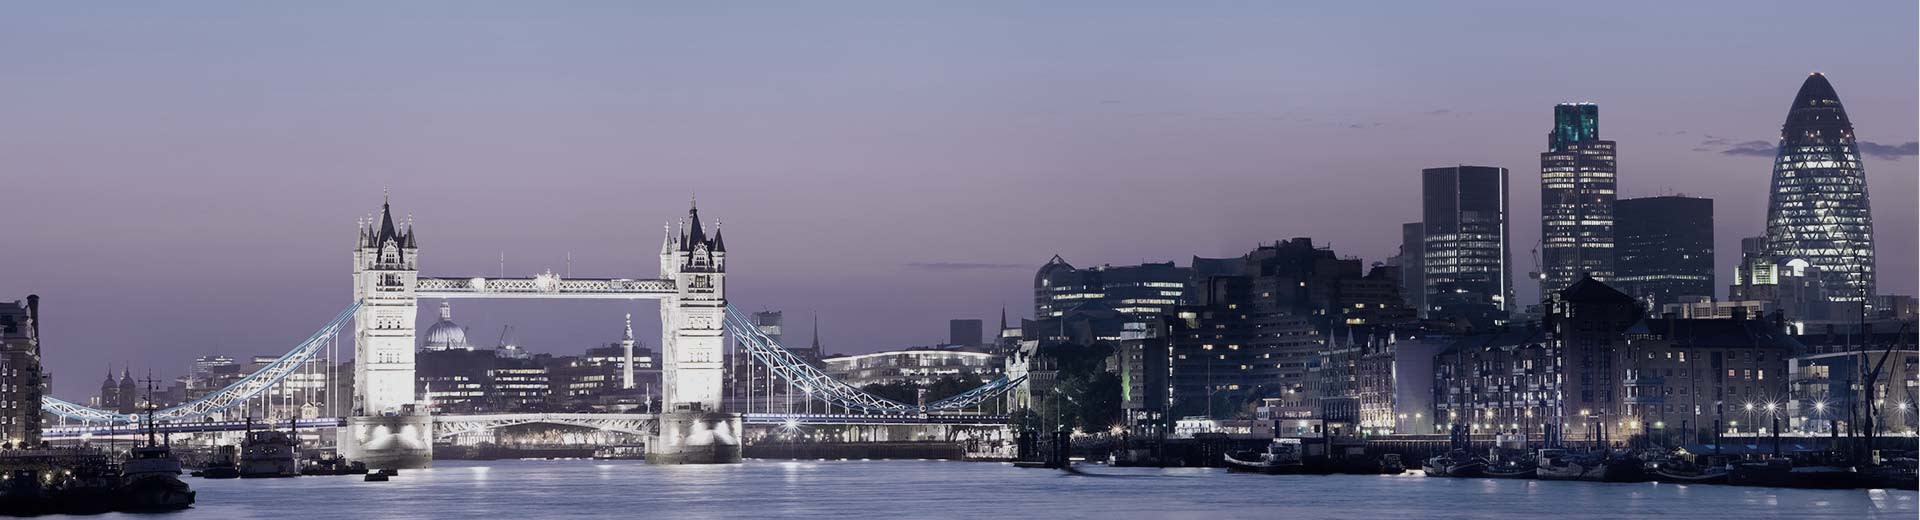 London Bridge se extiende sobre el Támesis por la noche, iluminando el cielo.